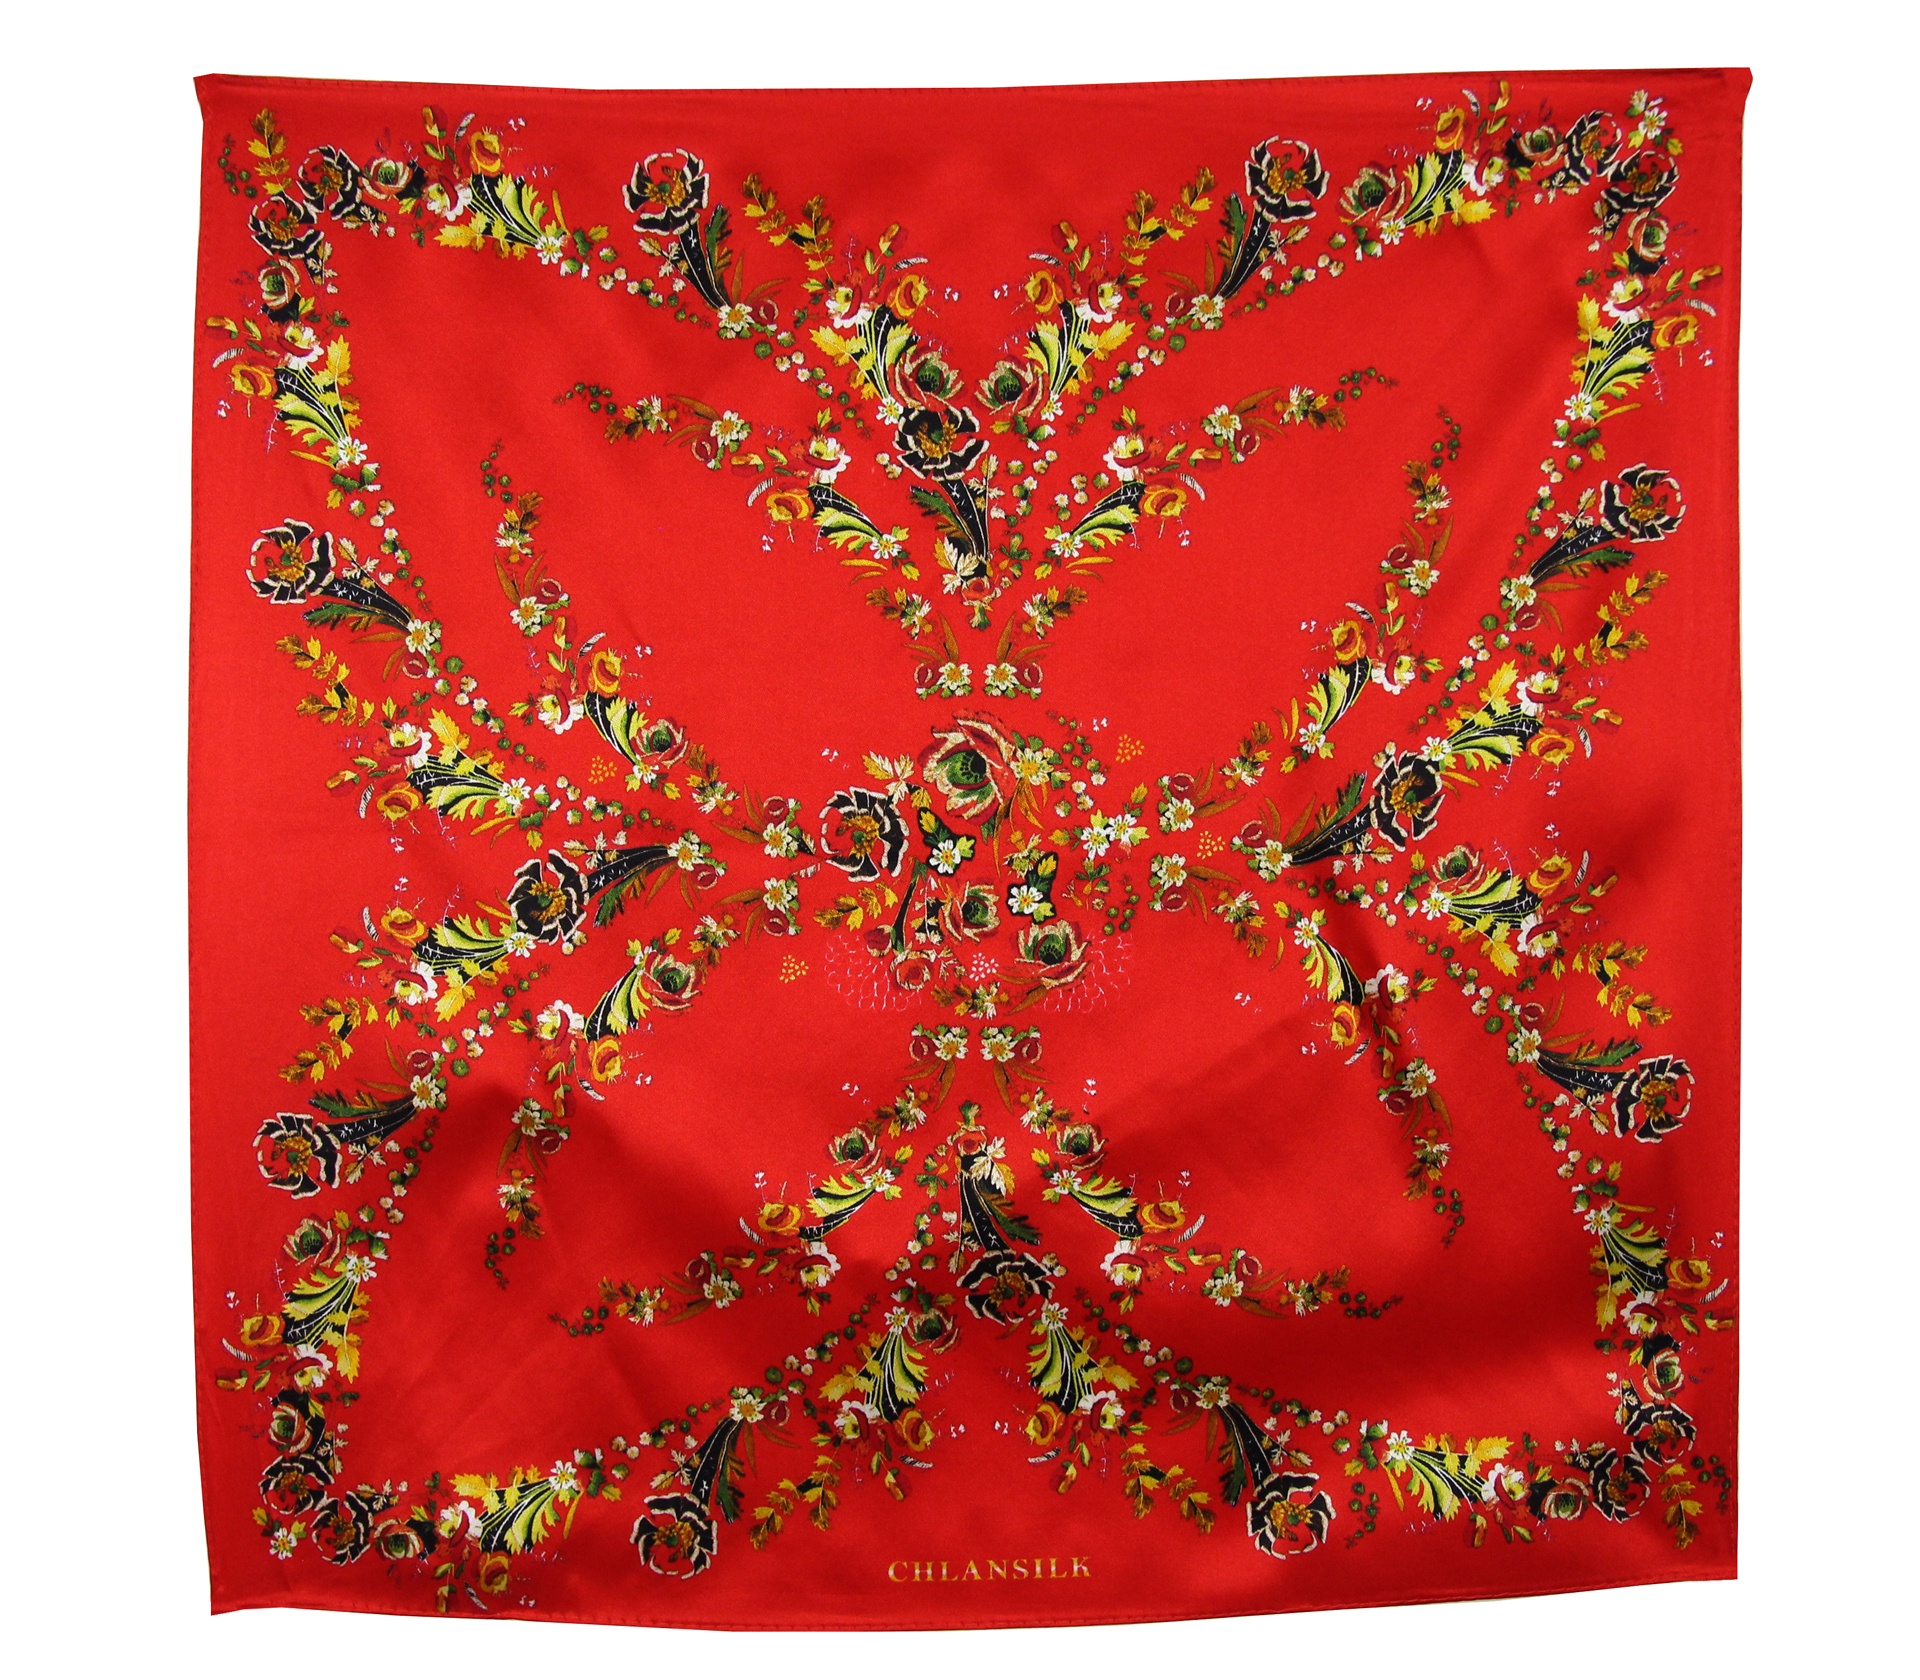 闕蘭絹印花紅色緞面100%蠶絲絲巾50*50CM  - 1121